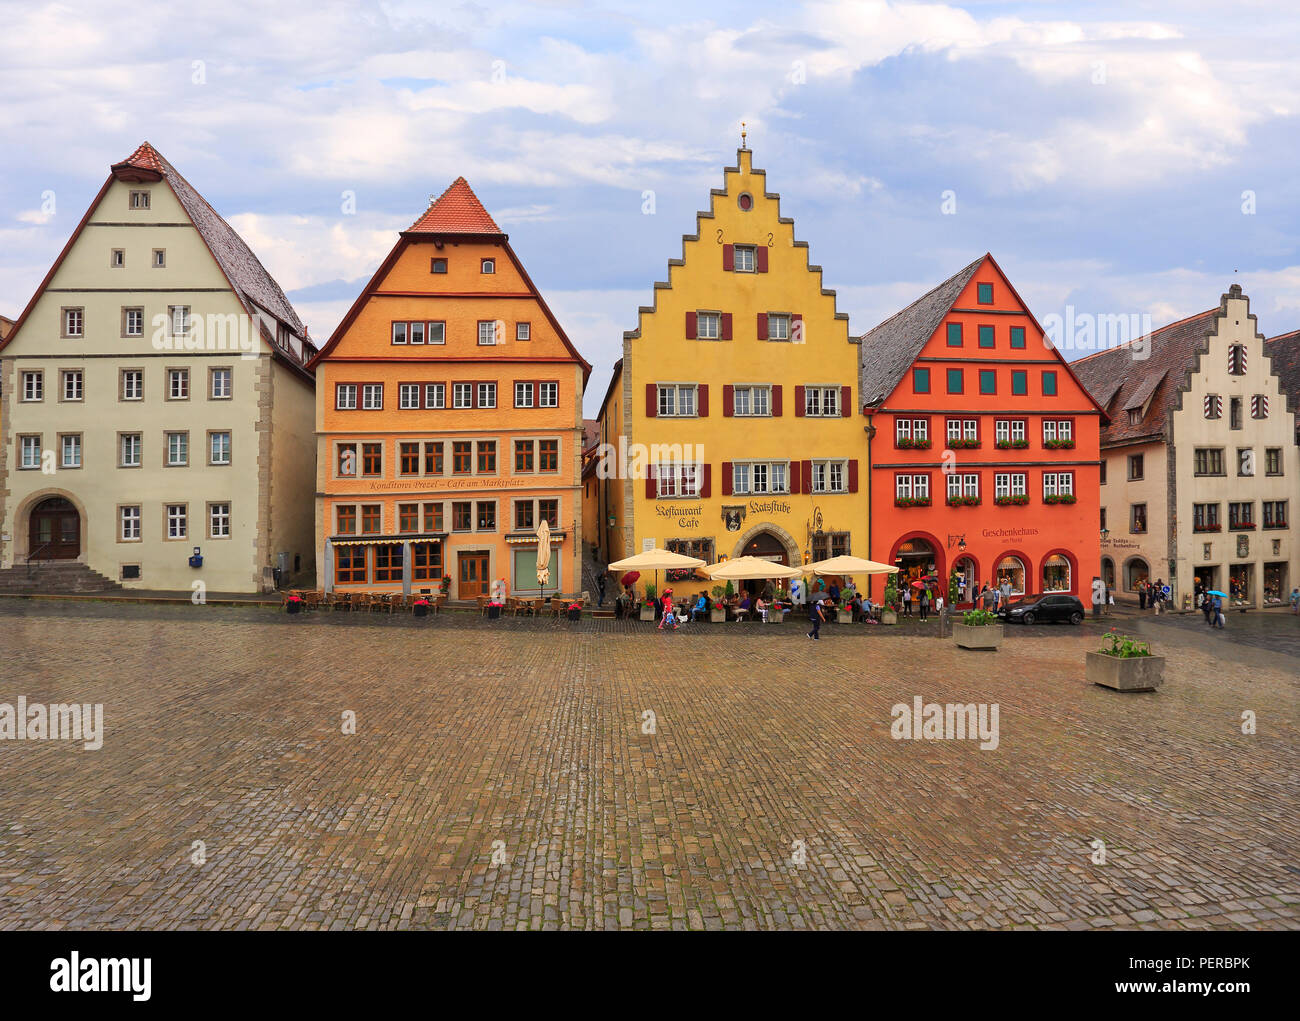 Touristen genießen Sie Shopping und Architektur in Markplatz mit traditionellen Häusern, Rothenburg o.d. Tauber, Mittelfranken, Bayern, Deutschland Stockfoto